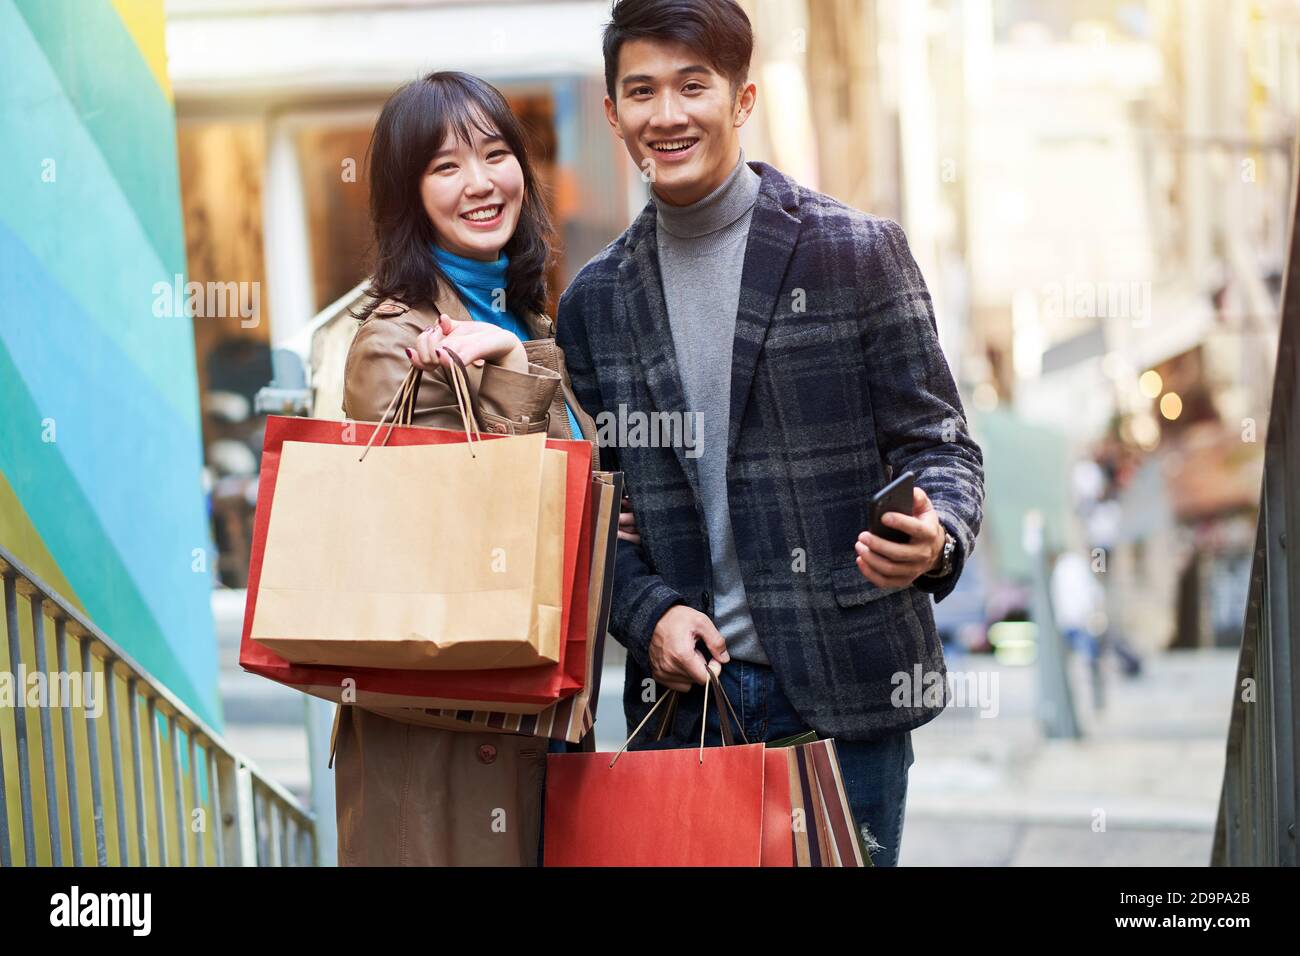 portrait en plein air d'un jeune couple asiatique heureux qui fait ses courses la ville Banque D'Images